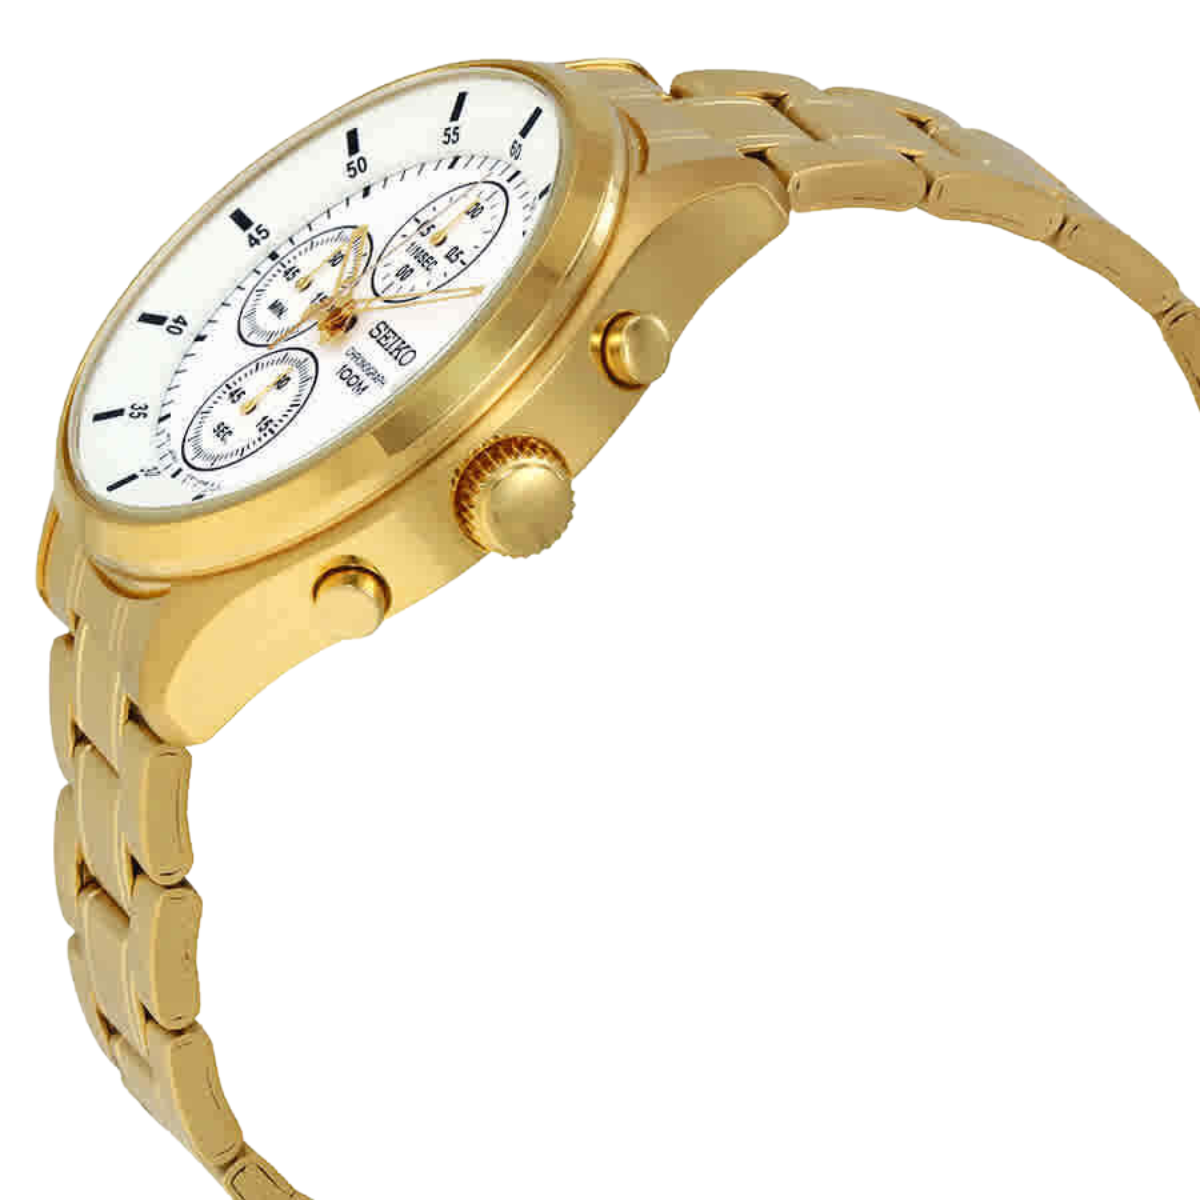 นาฬิกา SEIKO Chronograph Men's Watch รุ่น SKS544 SKS544P SKS544P1 Quartz